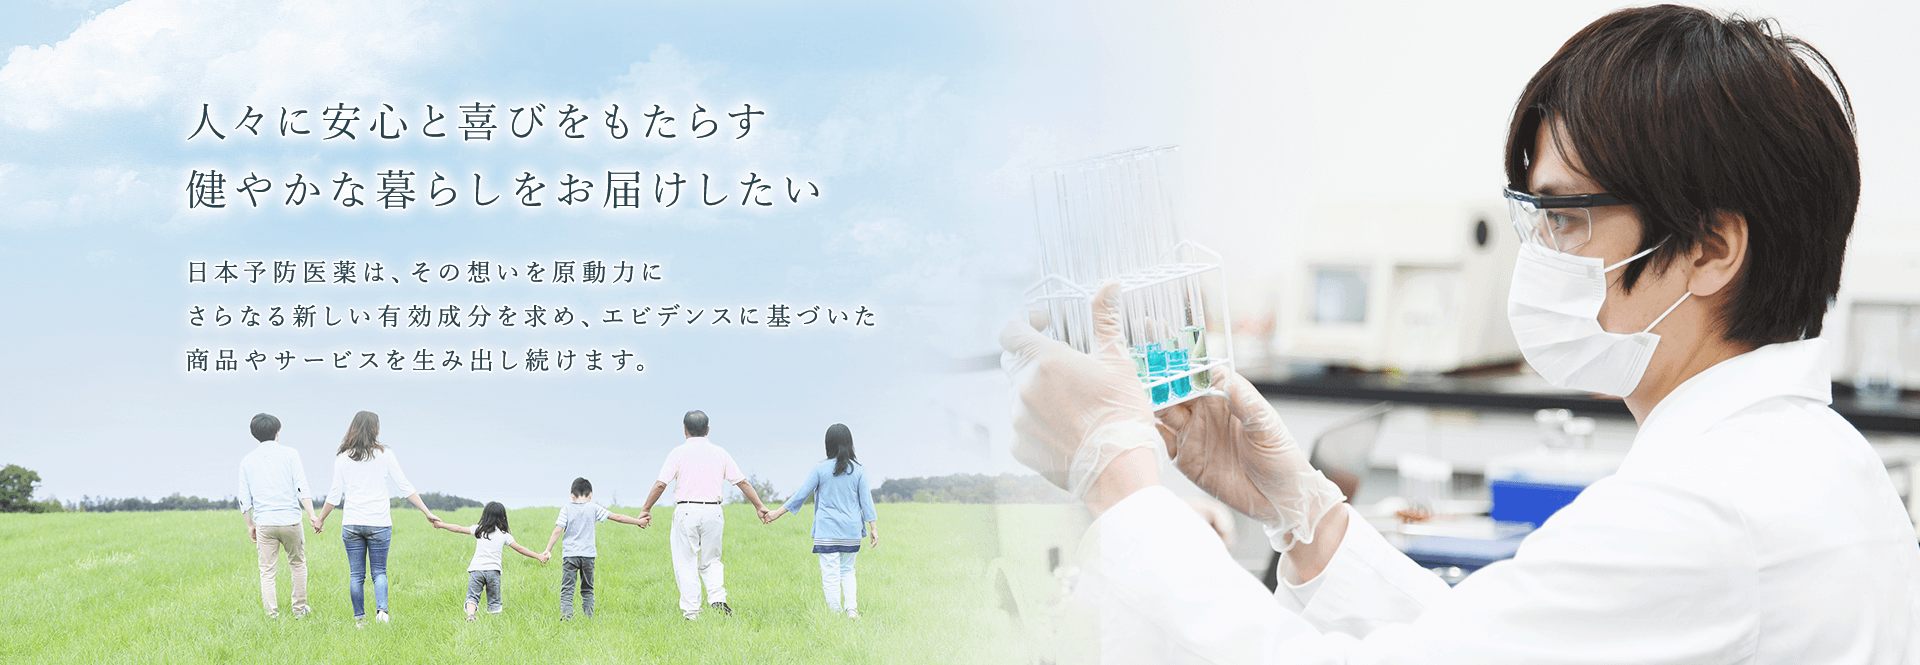 日本予防医薬株式会社 人々に安心と喜びをもたらす健やかな暮らしをお届けしたい日本予防医薬は、その想いを原動力にさらなる新しい有効成分を求め、エビデンスに基づいた商品やサービスを生み出し続けます。